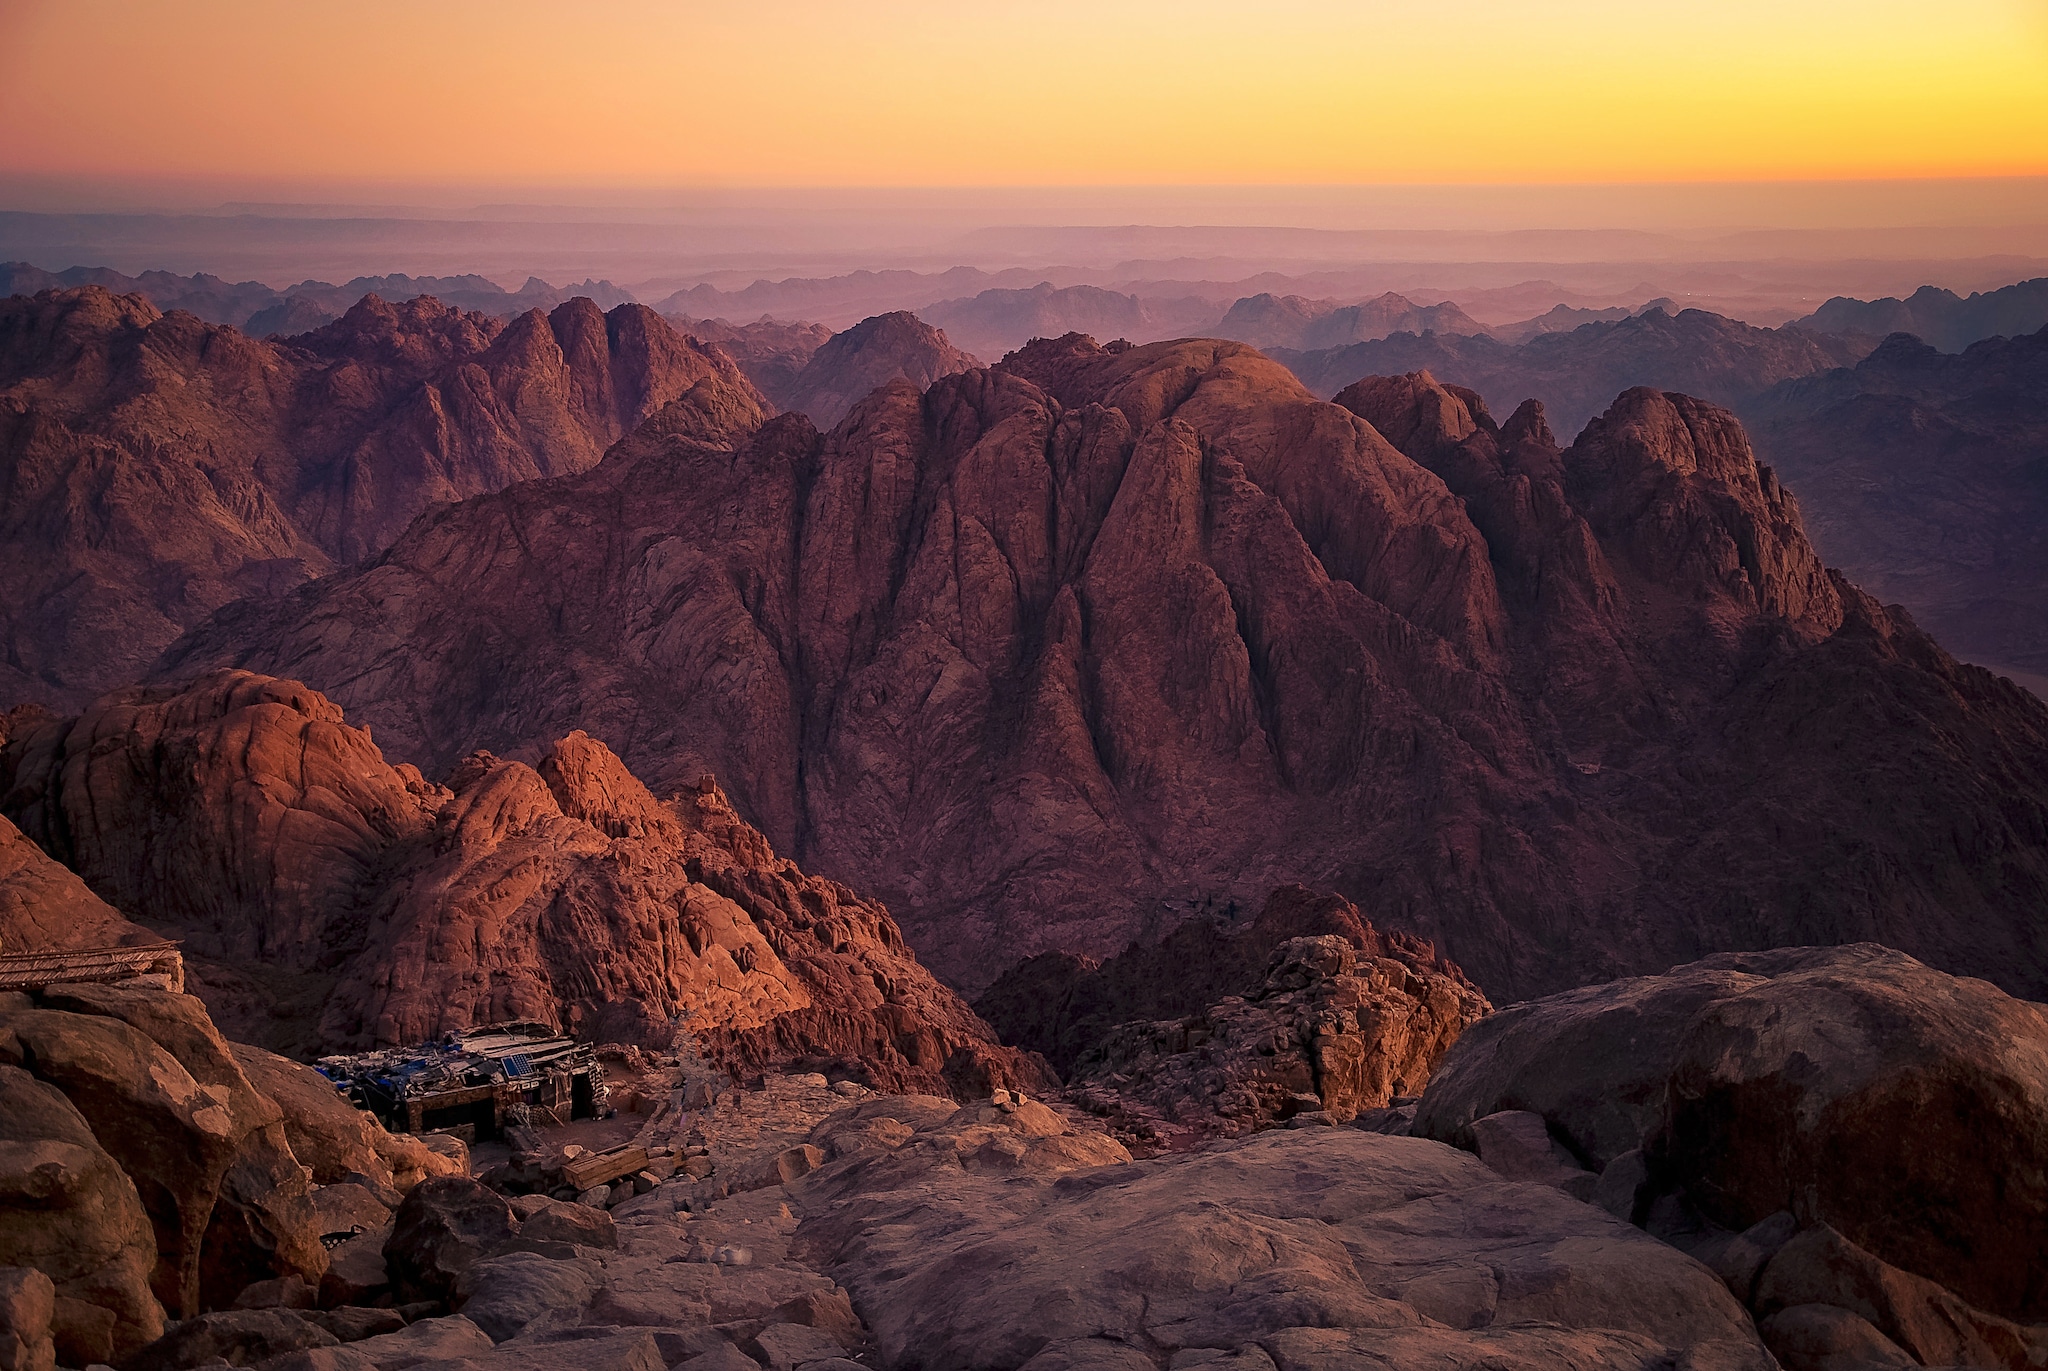 Mount Sinai Mountains